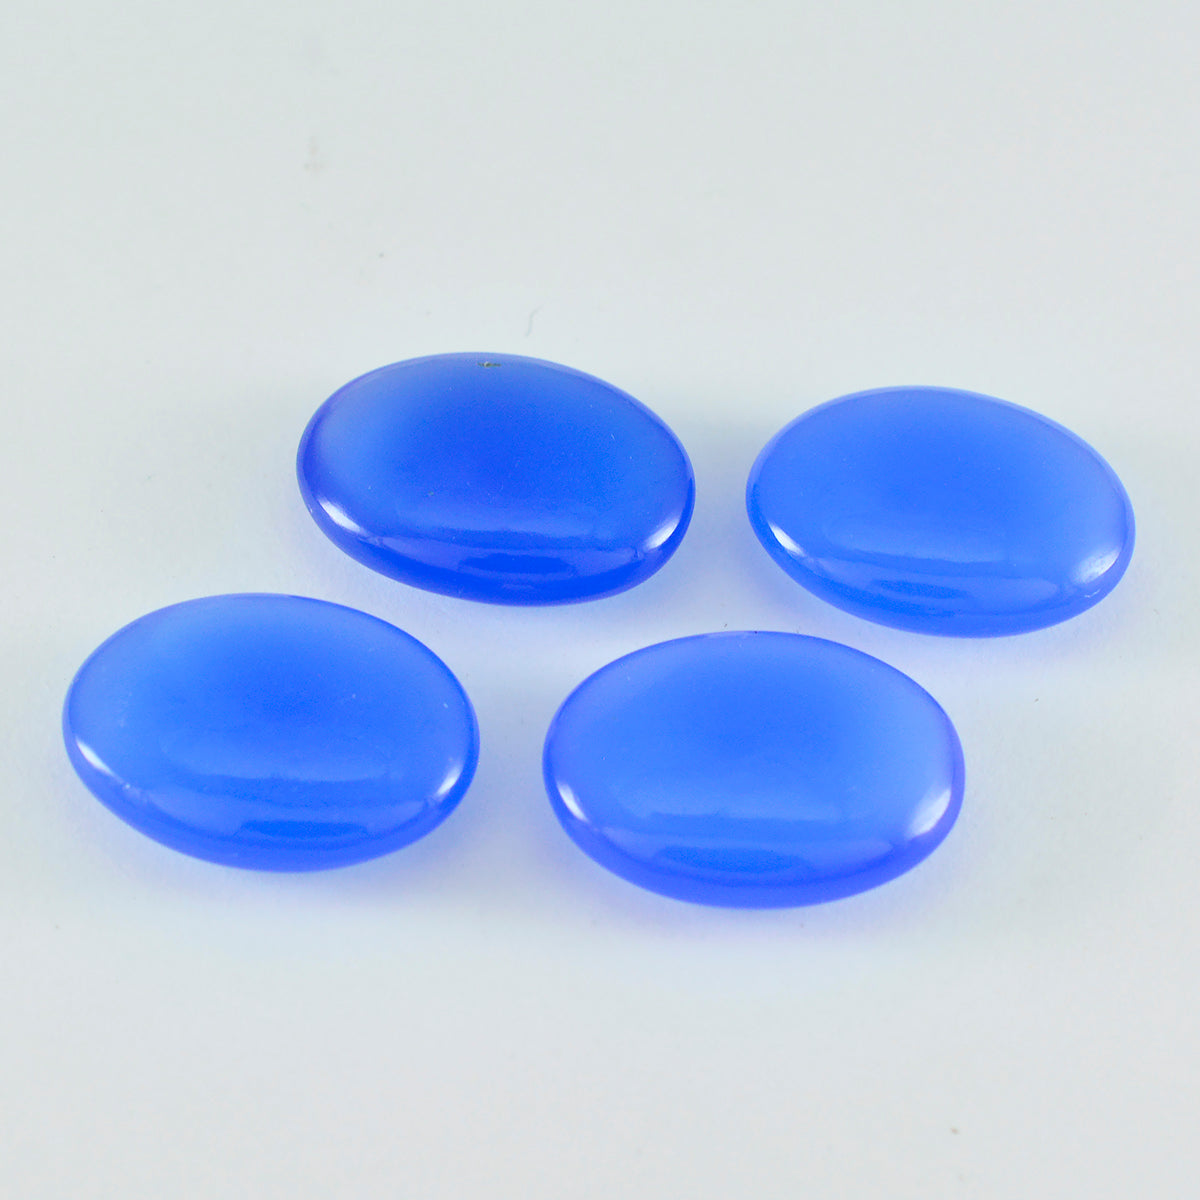 Riyogems 1 Stück blauer Chalcedon-Cabochon, 12 x 16 mm, ovale Form, süßer Qualitätsstein